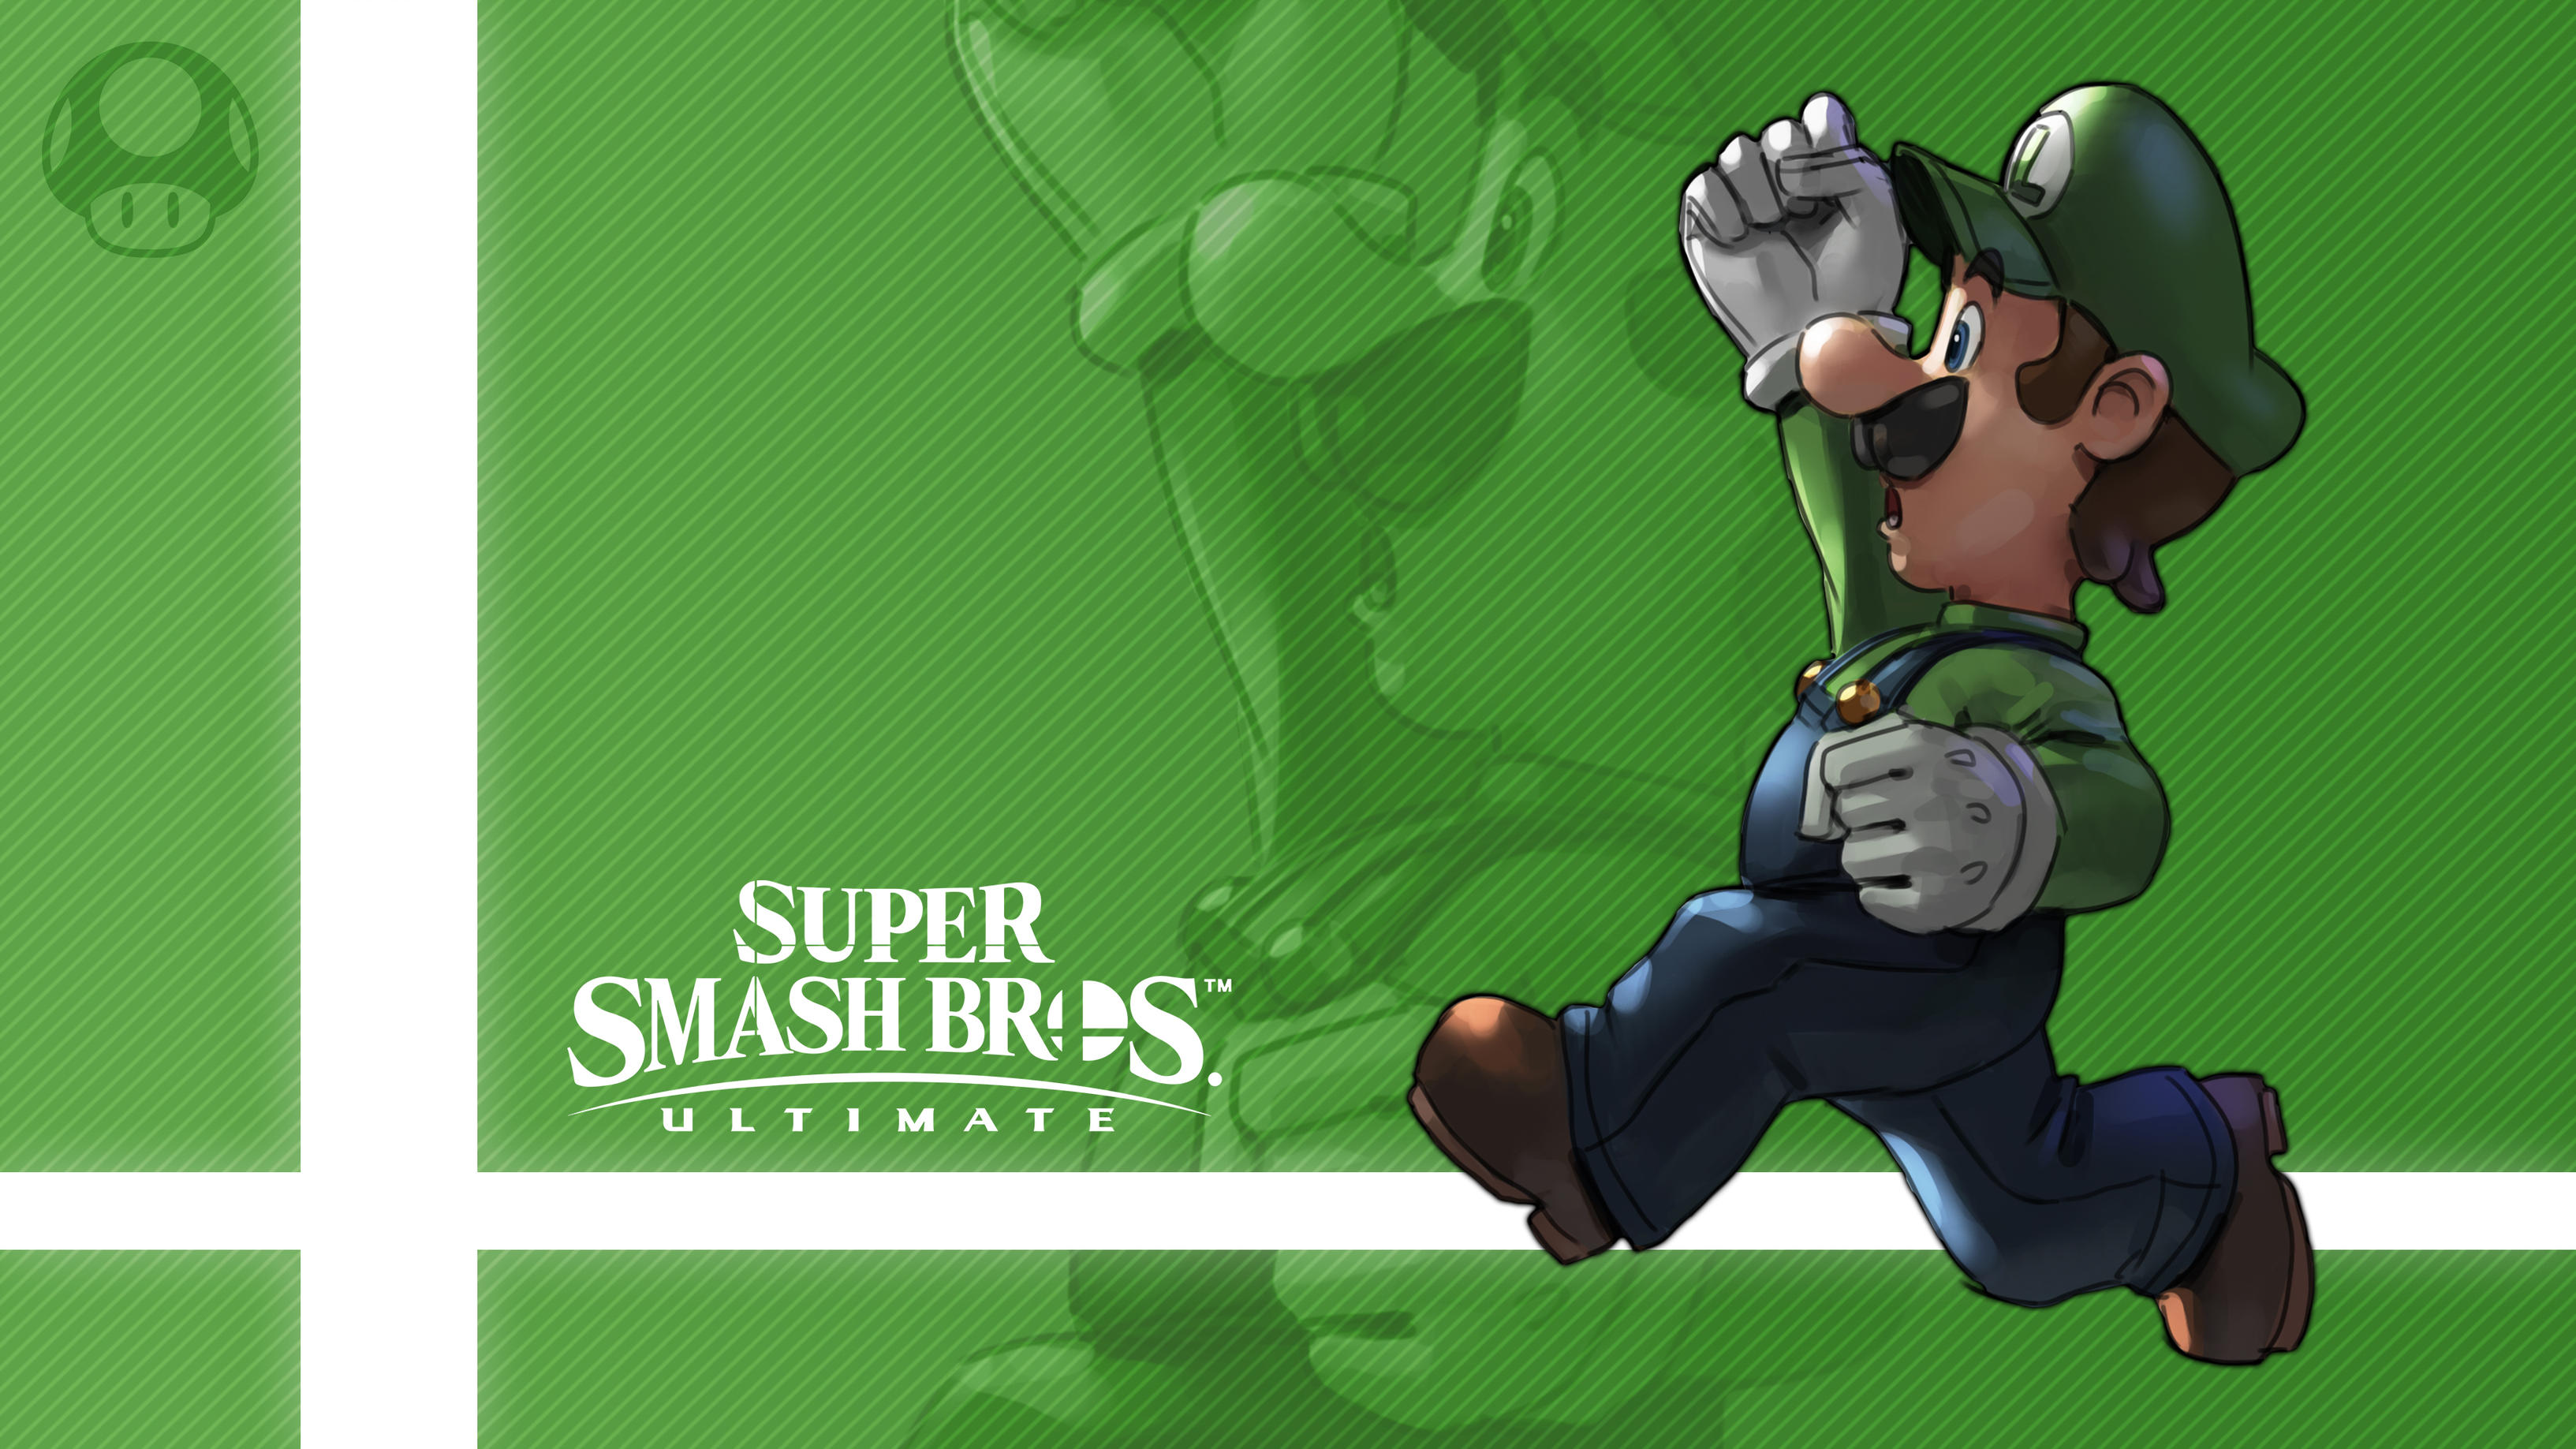 Luigi Super Smash Bros Ultimate 3266x1837